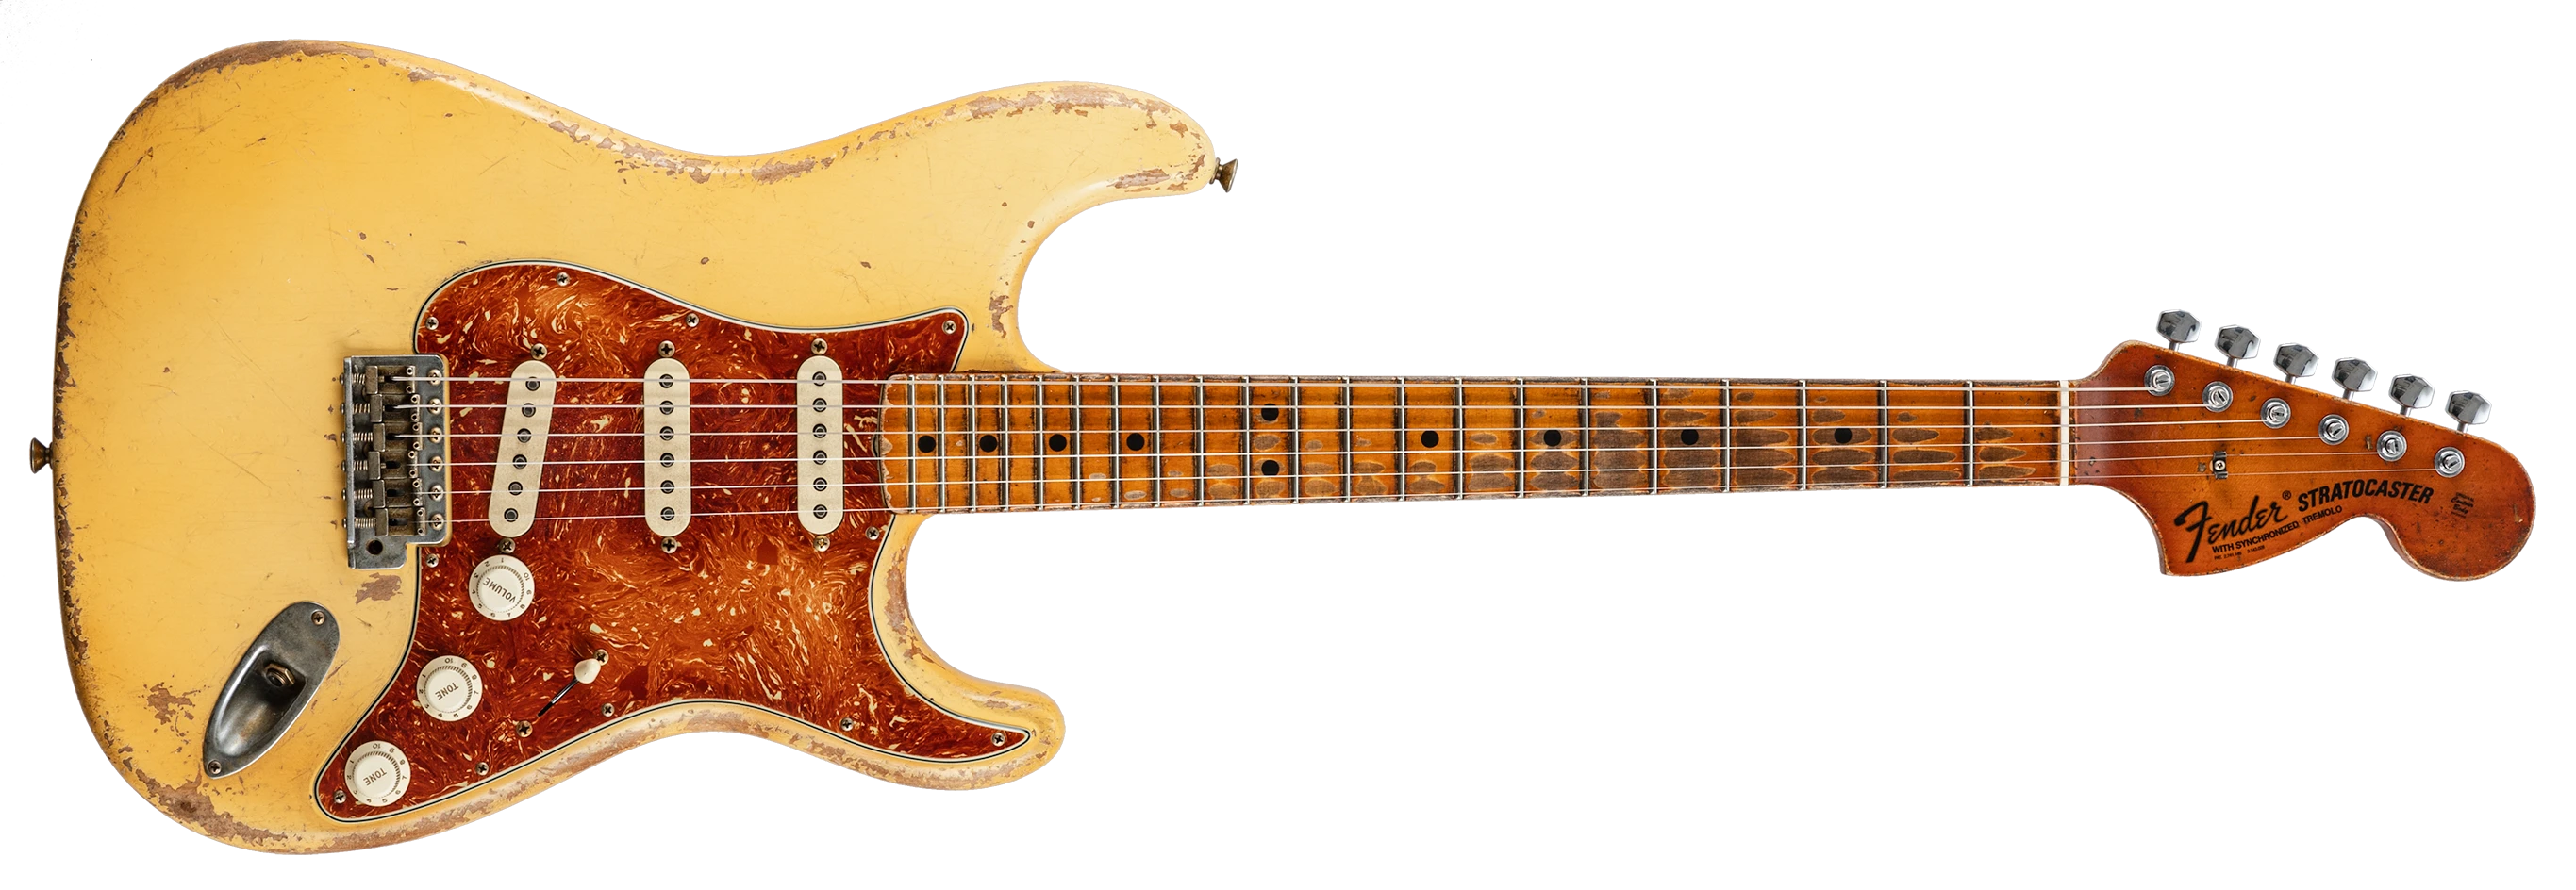 Fender Strat 1969 Heavy Relic Masterbuilt Vincent van Trigt